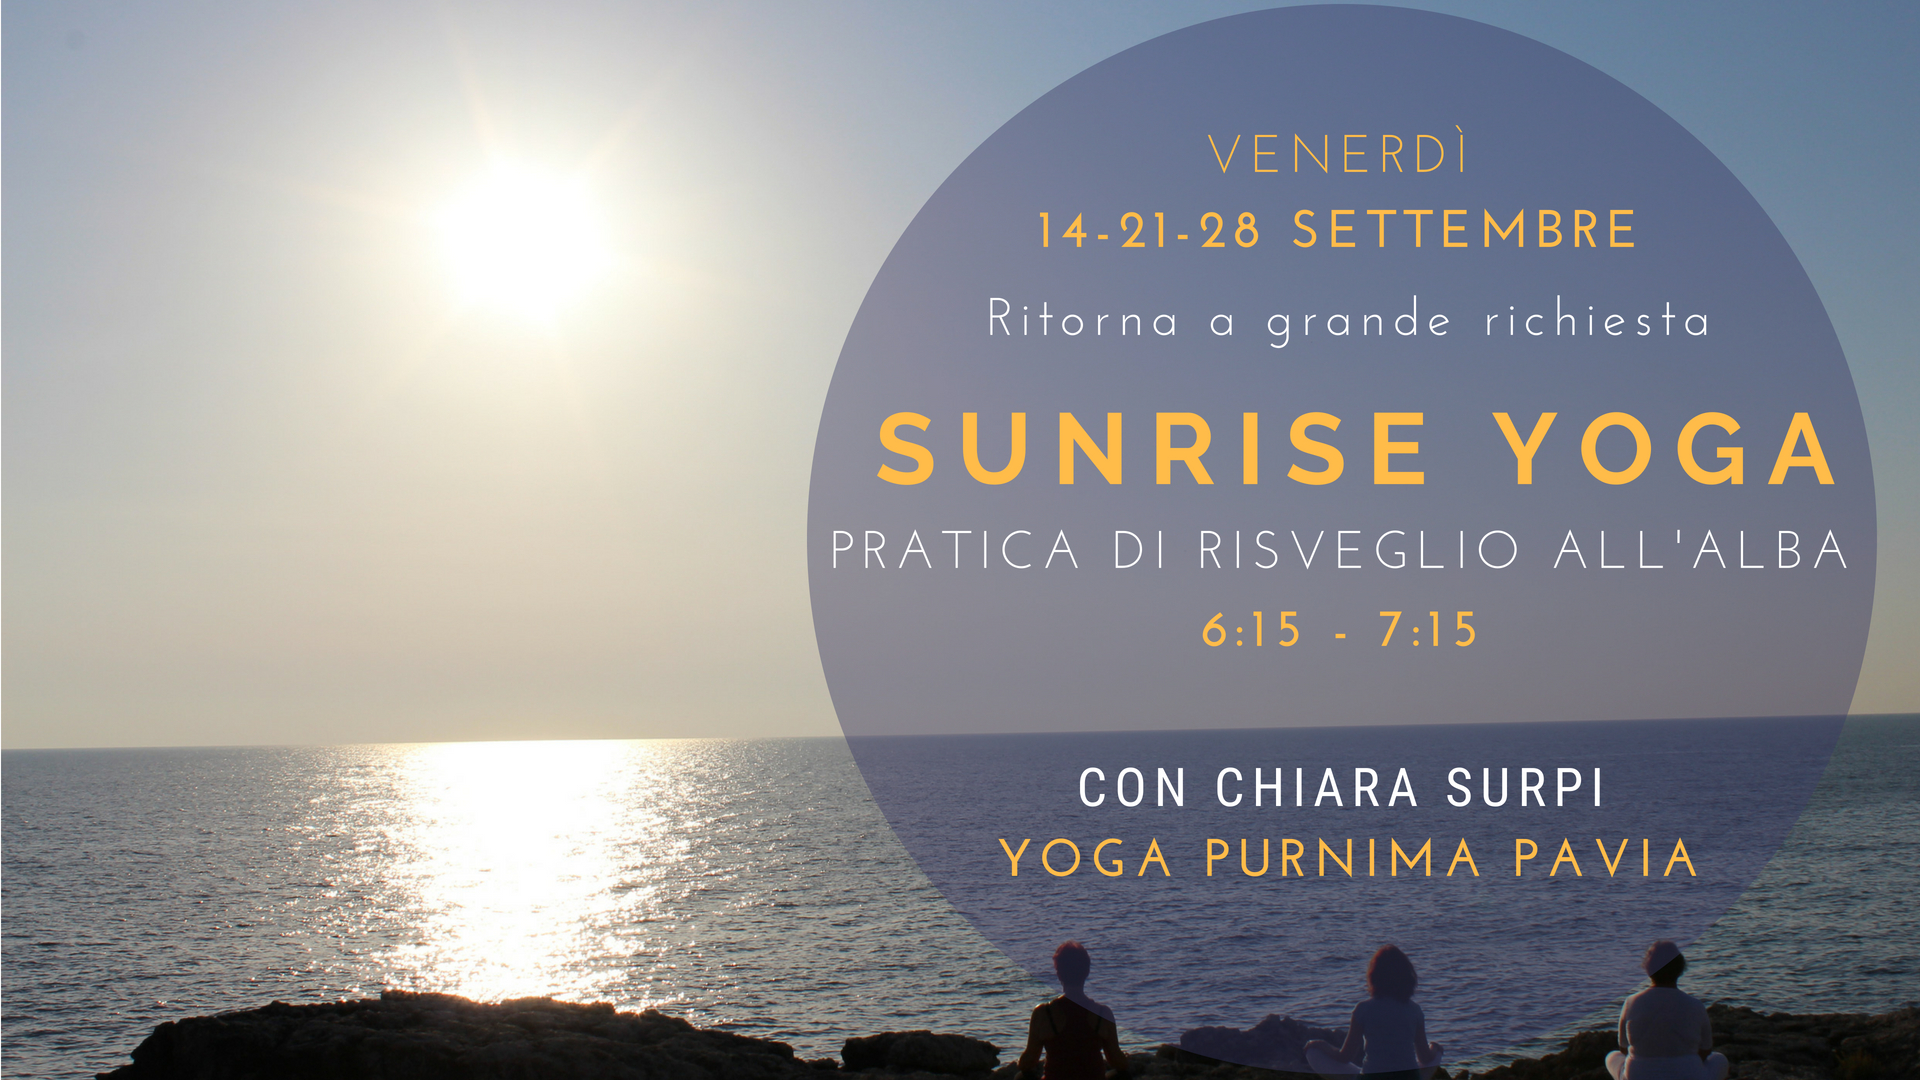 Sunrise Yoga: nuovo risveglio a settembre con lo yoga all’alba!